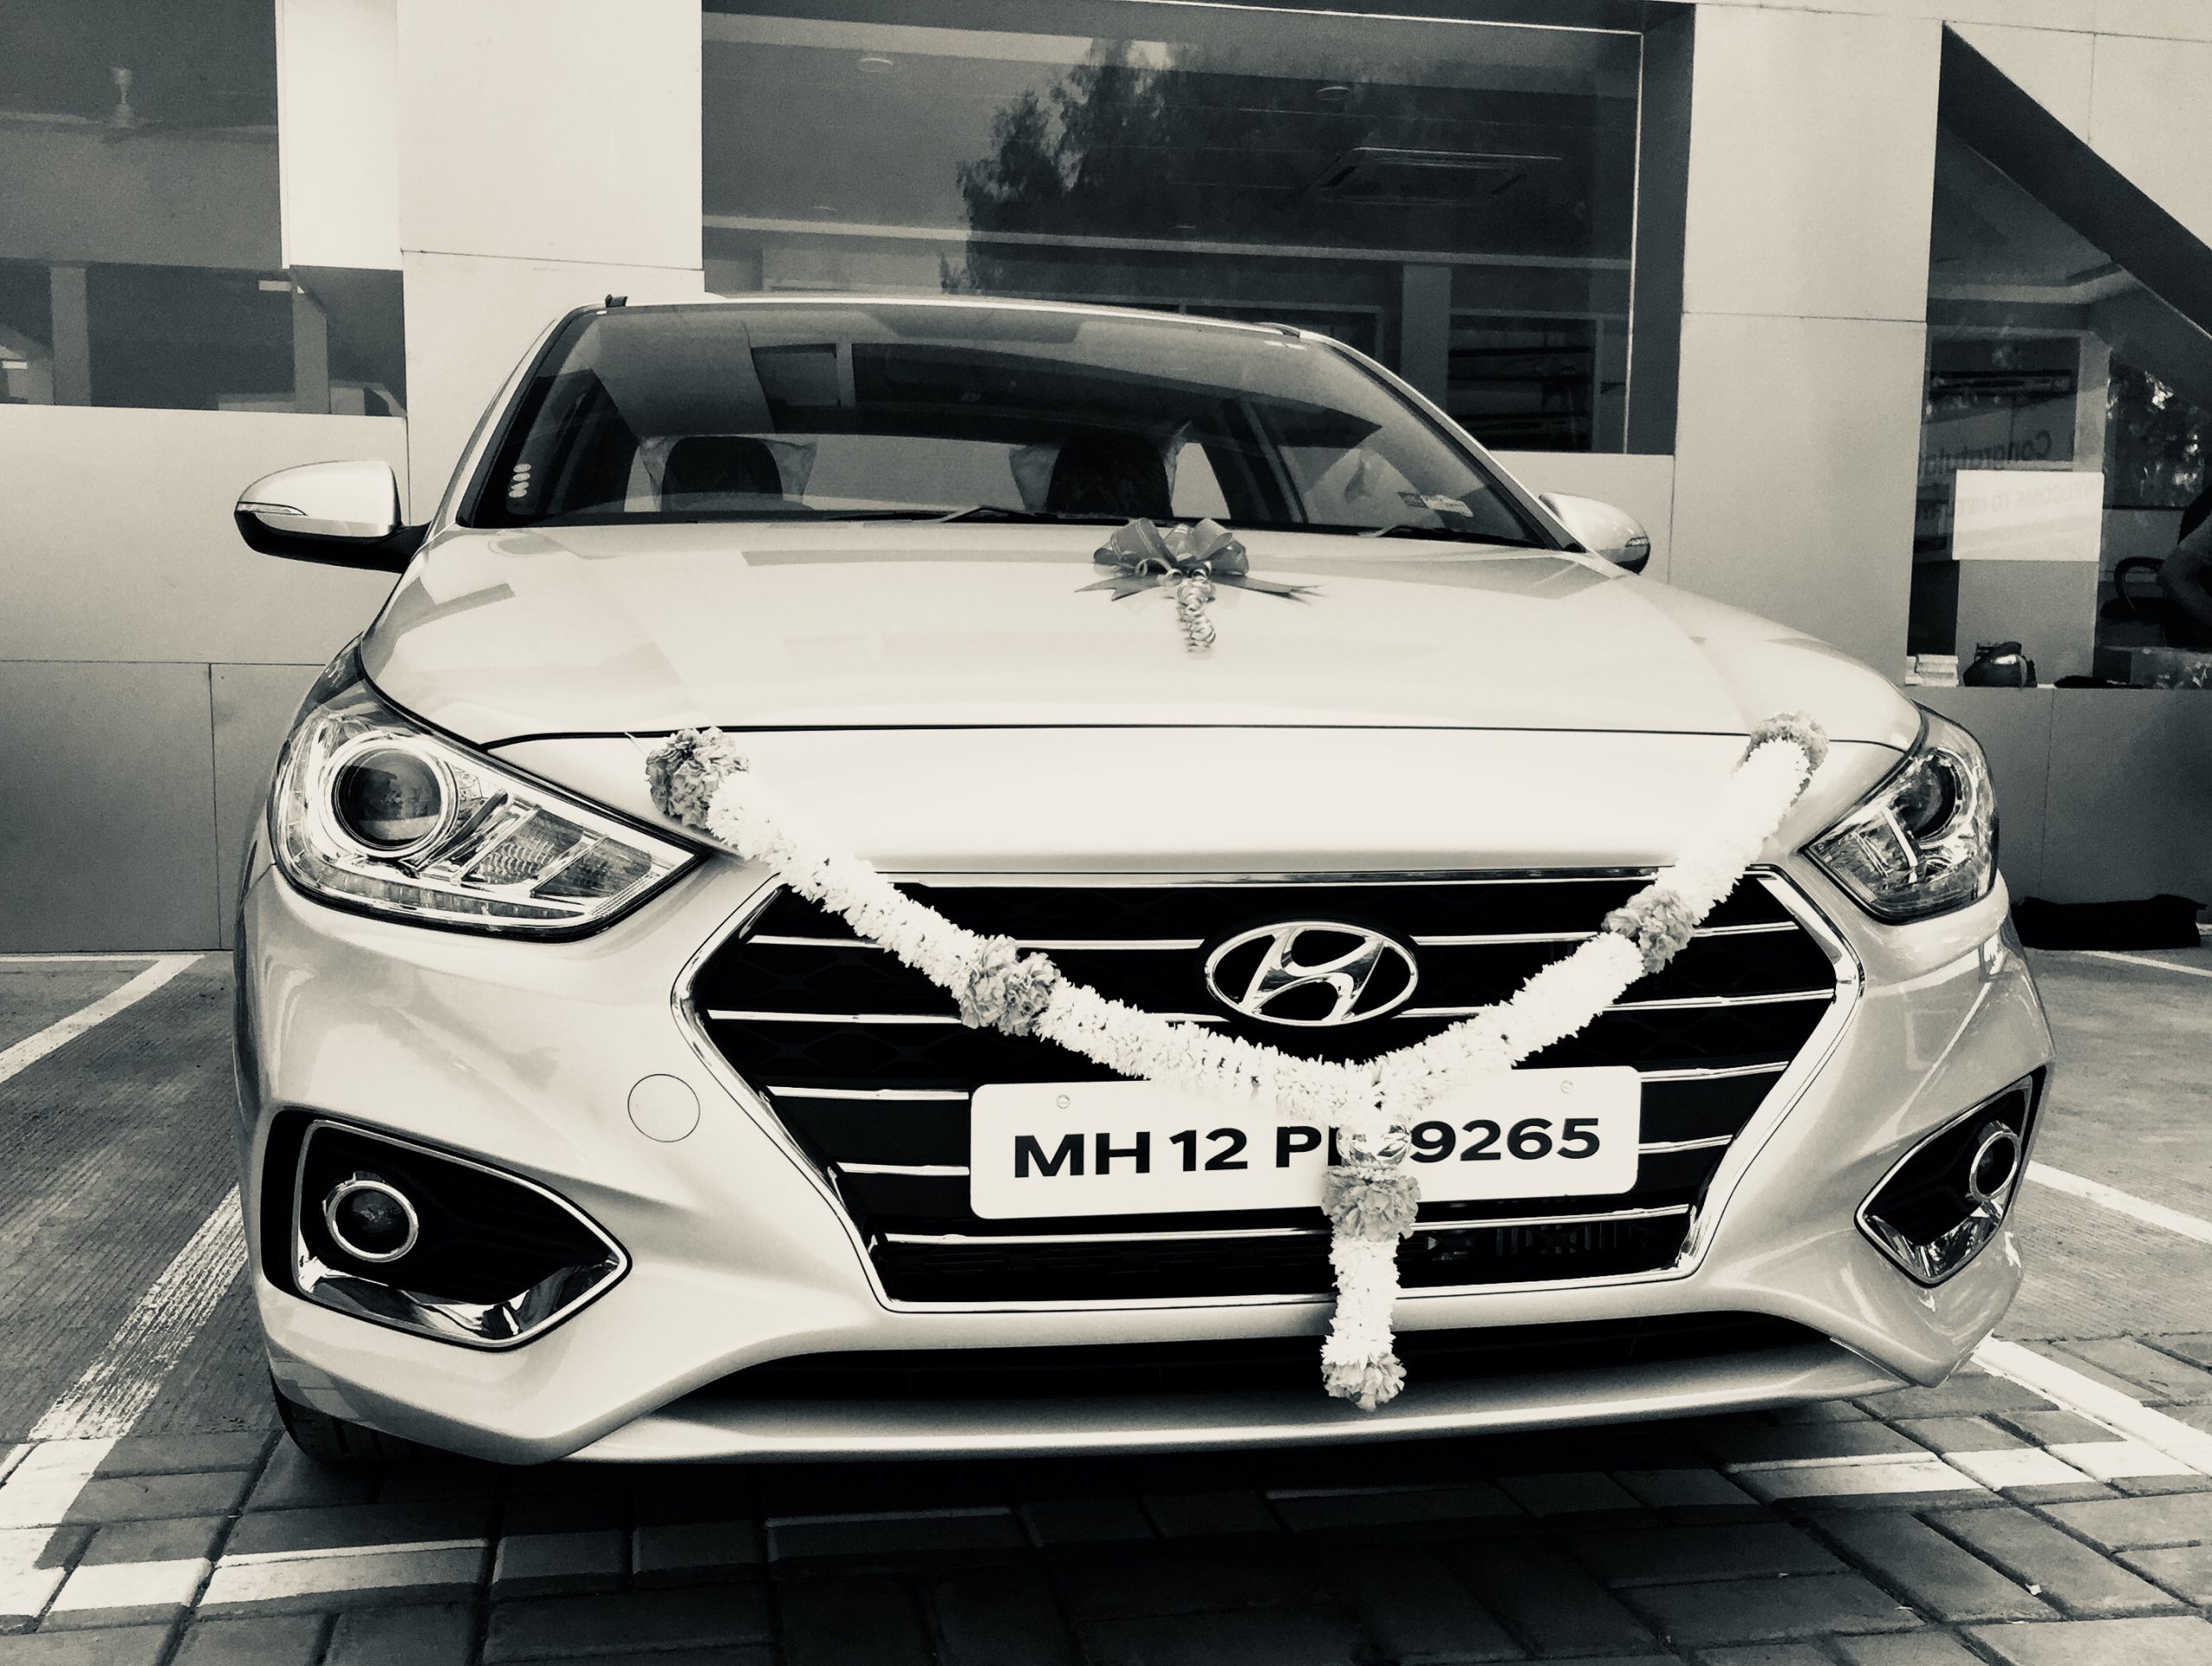 Mr. Chandrashekhar Mahadik gets a Hyundai Verna Sx